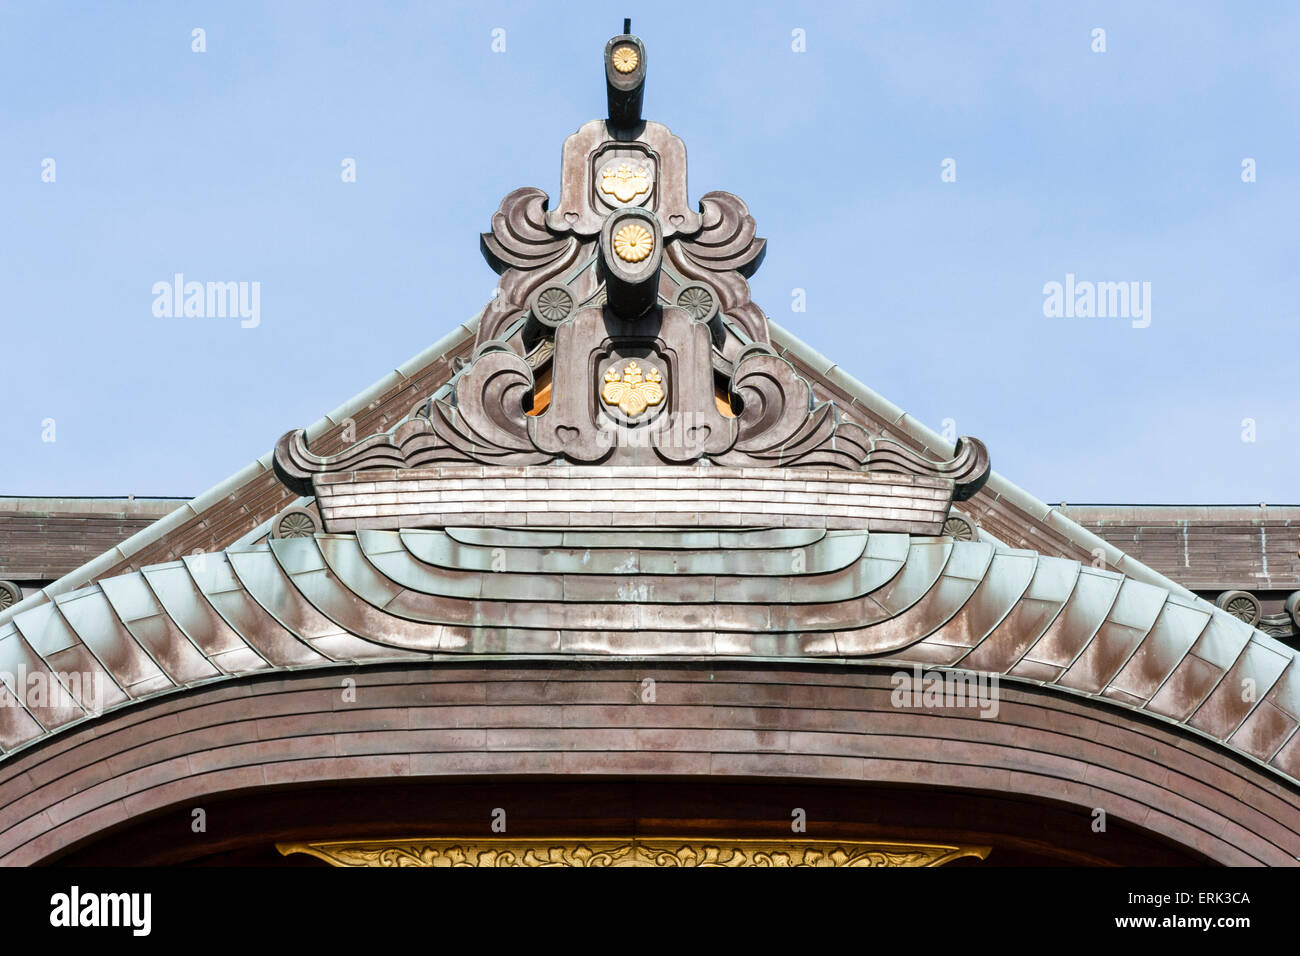 Giappone, Nishinomiya, il Tempio di mondo Yakujin. Dettagli tetto della Haiden, sala principale, con elementi tipici di architettura tetto santuario, onigawara ecc Foto Stock